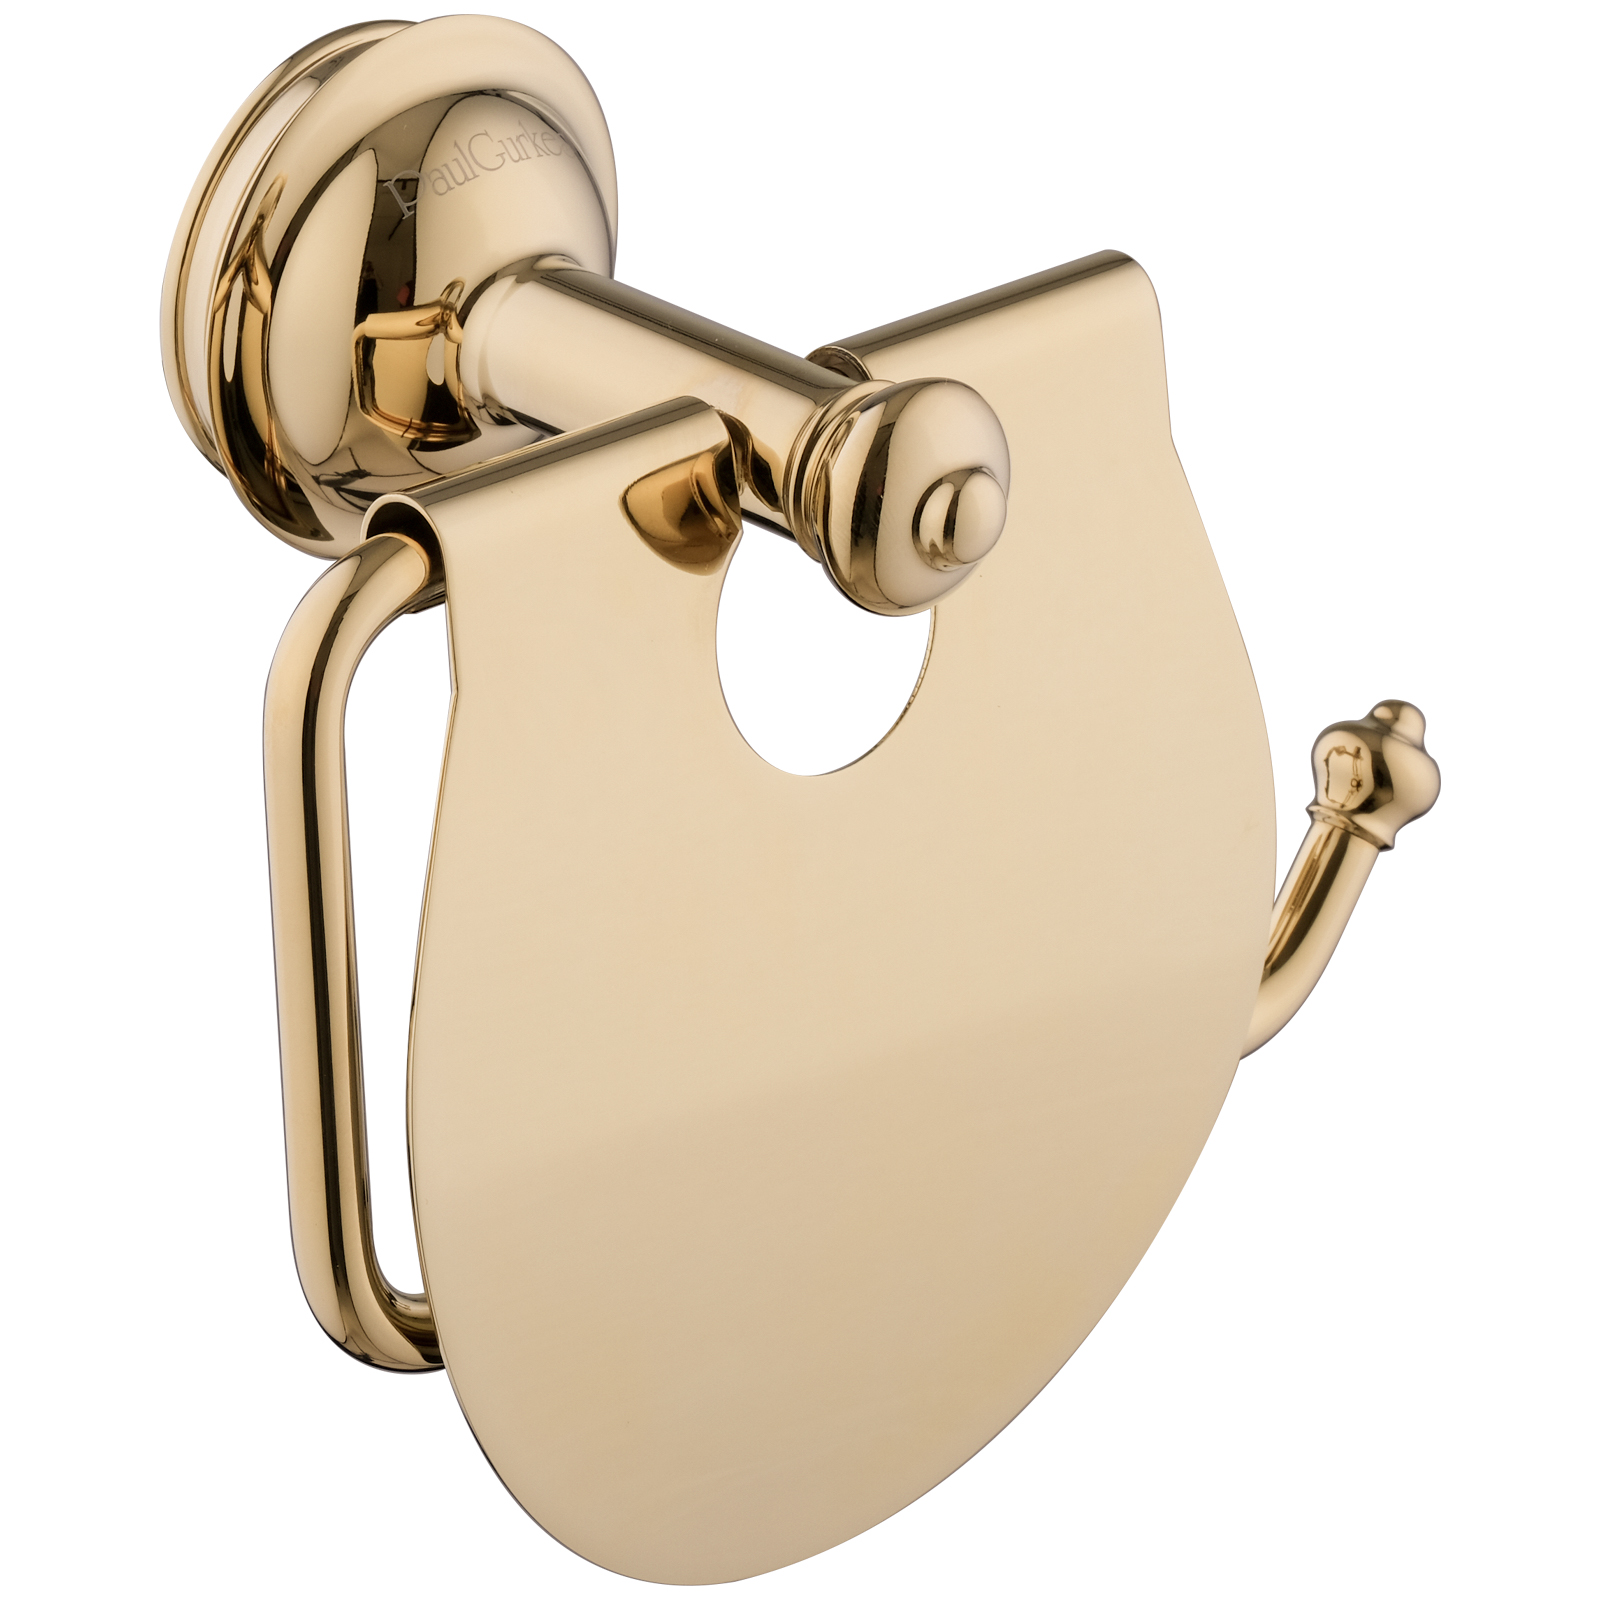 PaulGurkes Accessoire Set Gold WC-Papierhalter Handtuchhaken WC-Bürste Retro